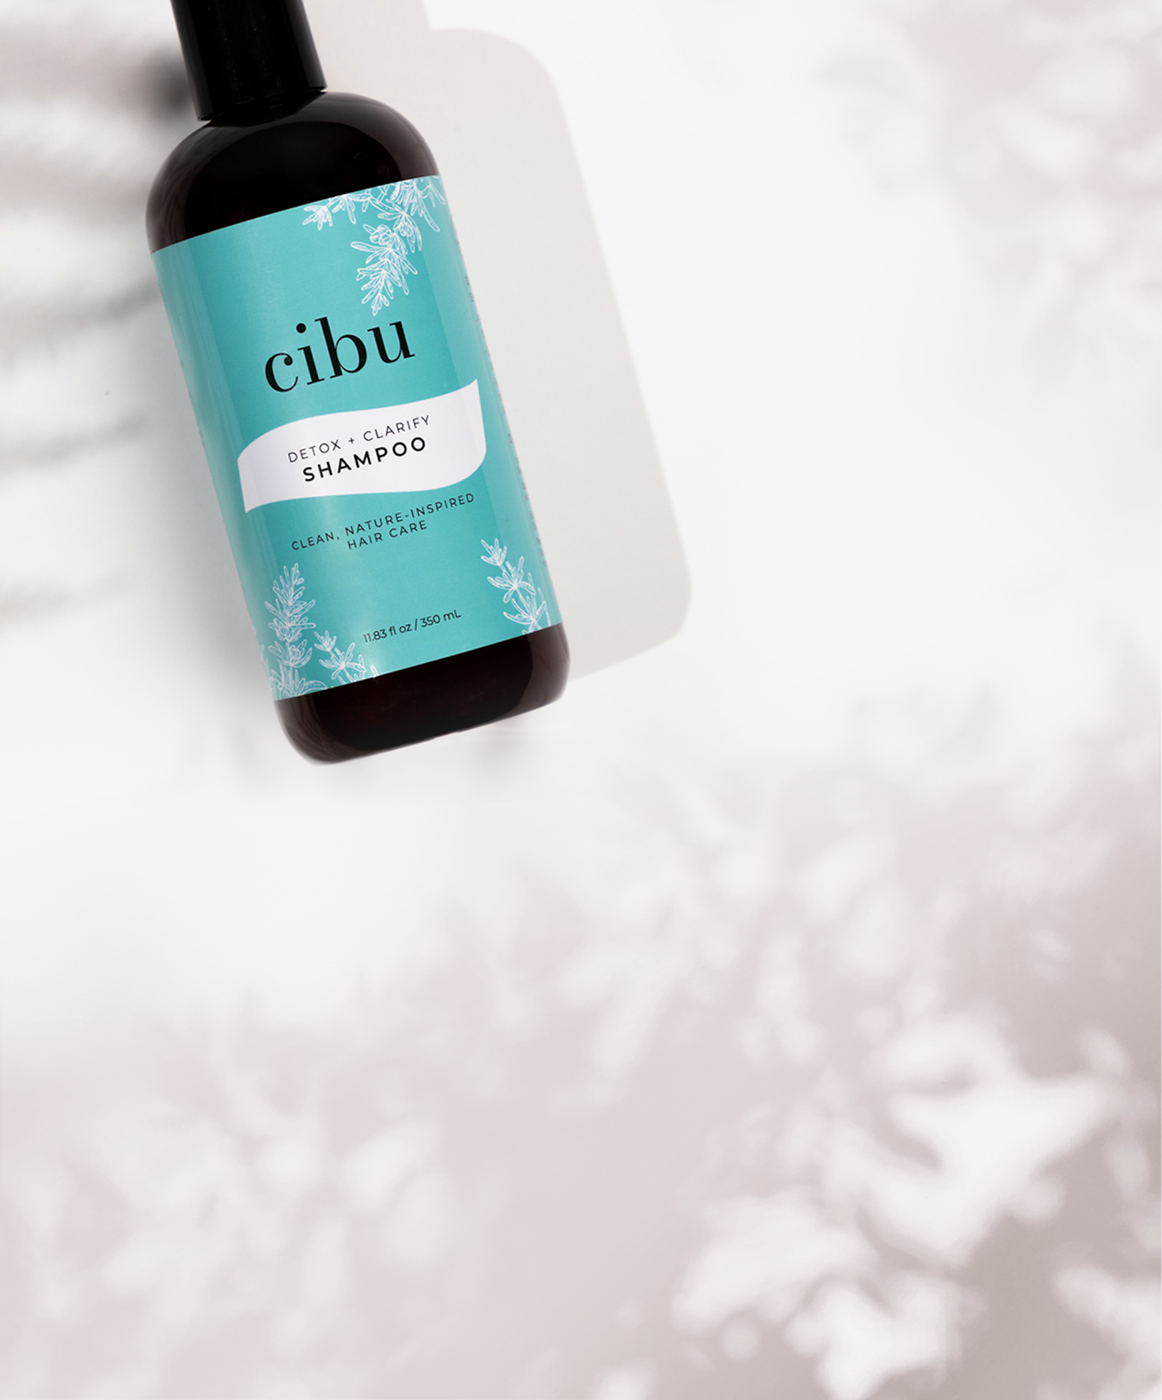 123 a 12oz bottle of cibu detox + clarify shampoo